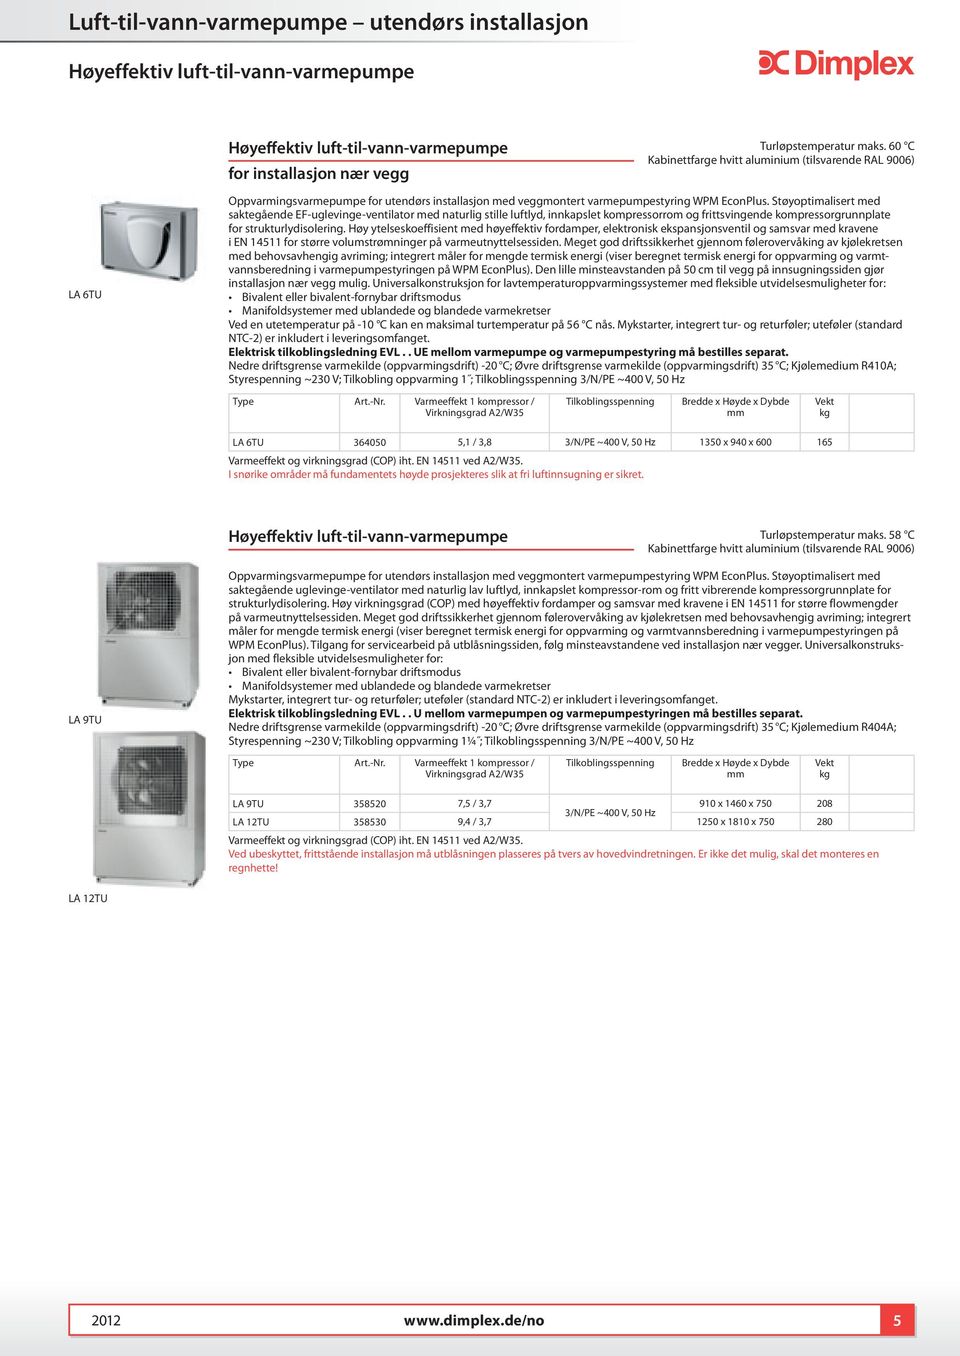 Støyoptimalisert med saktegående EF-uglevinge-ventilator med naturlig stille luftlyd, innkapslet kompressorrom og frittsvingende kompressorgrunnplate for strukturlydisolering.